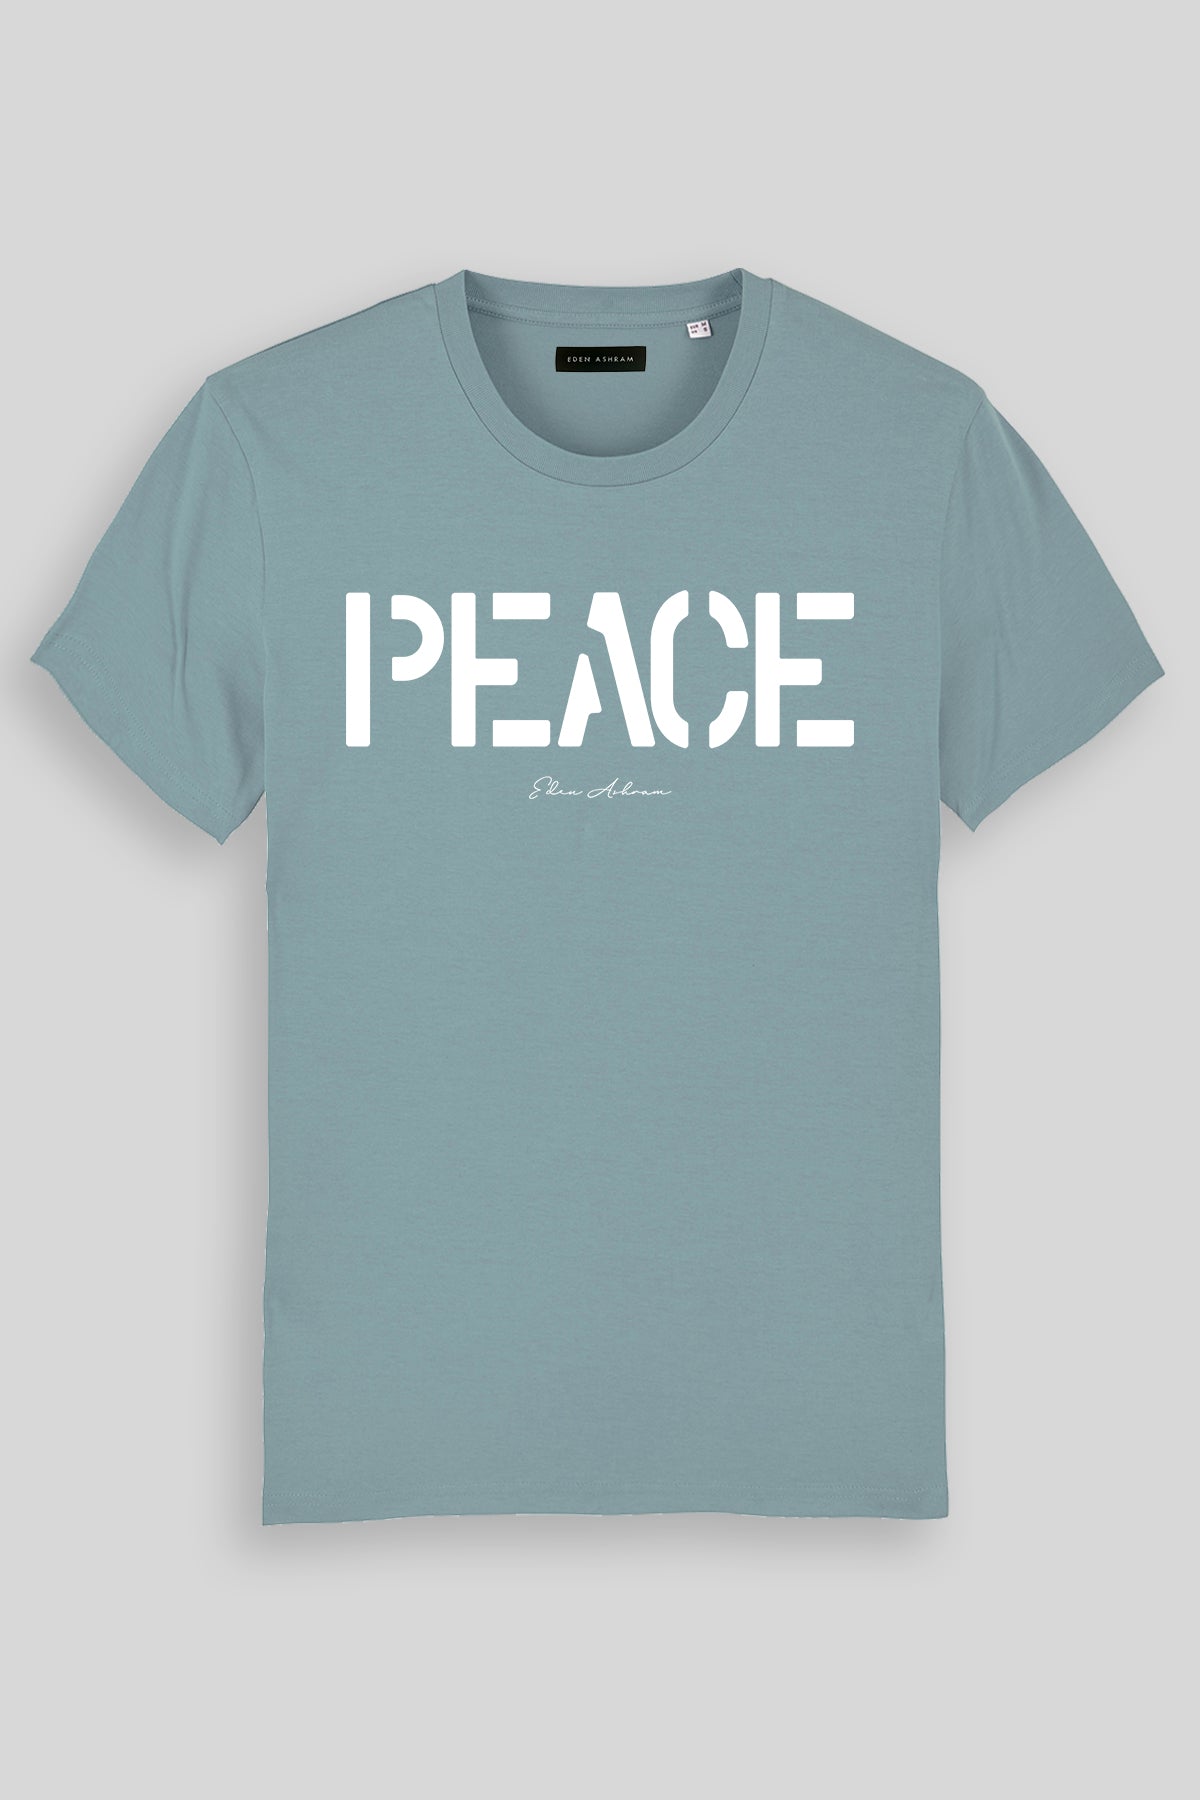 EDEN ASHRAM PEACE - Premium Classic T-Shirt Citadel Blue